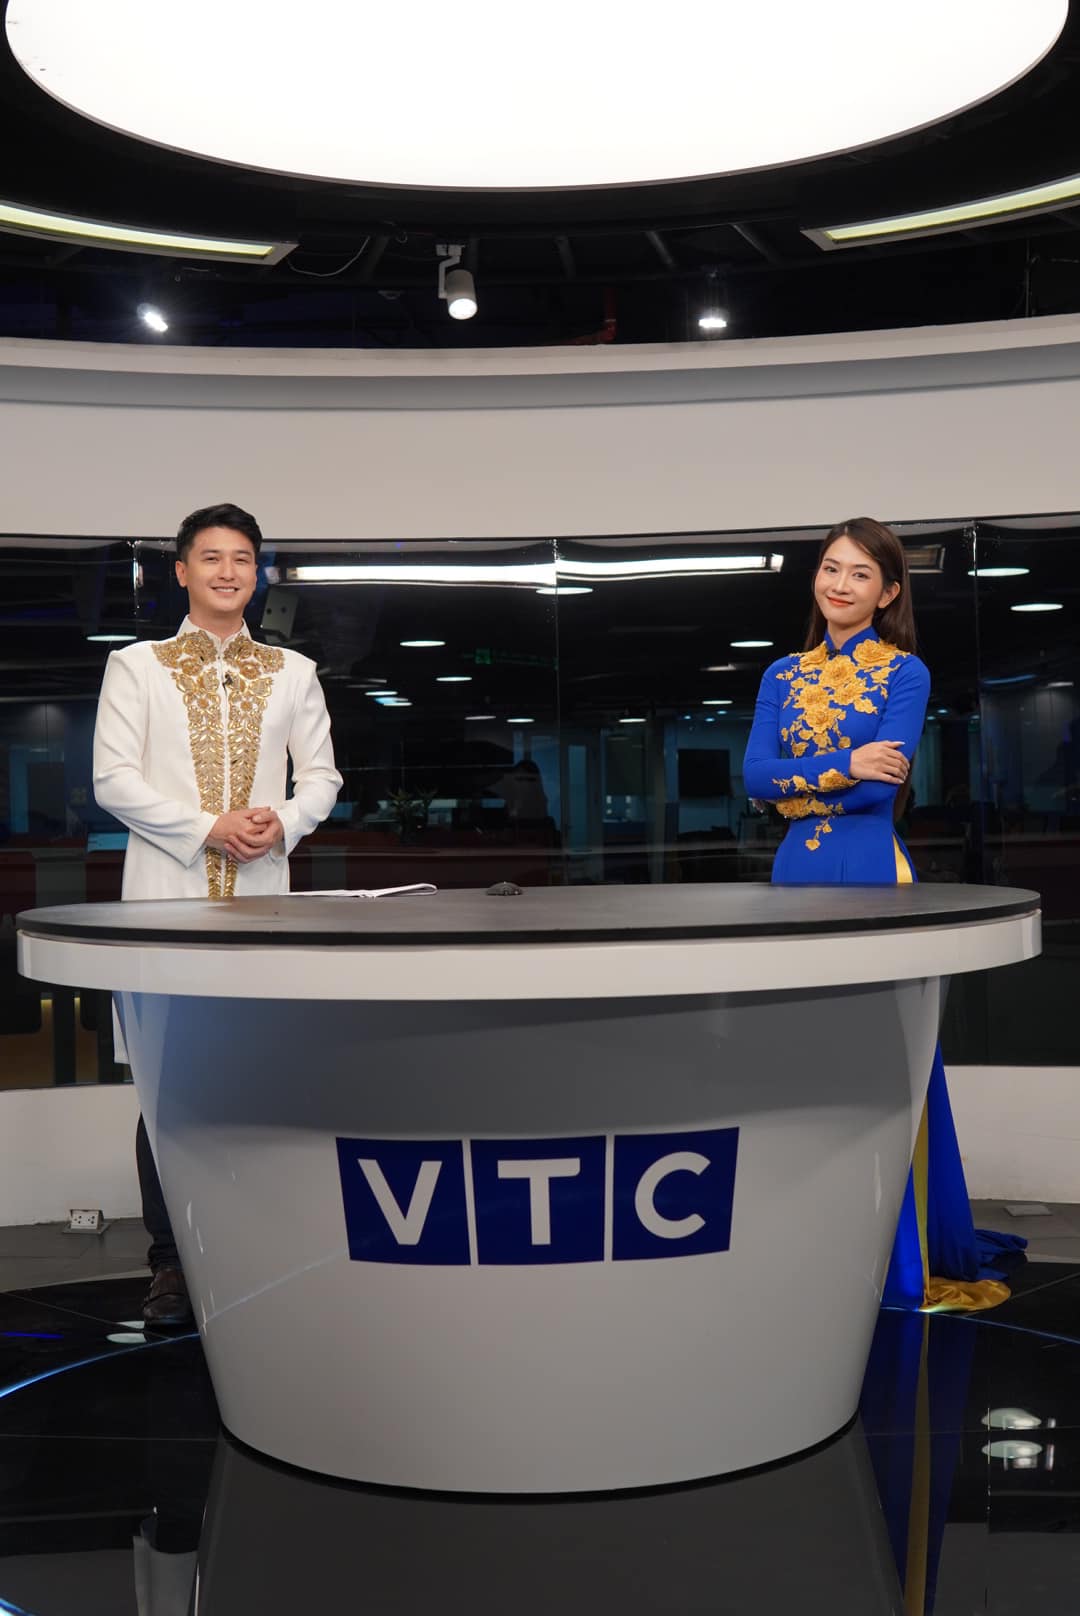 Lê Bống ‘debut’ sóng nhà đài với vai trò MC dịp Tết Nguyên Đán - ảnh 4